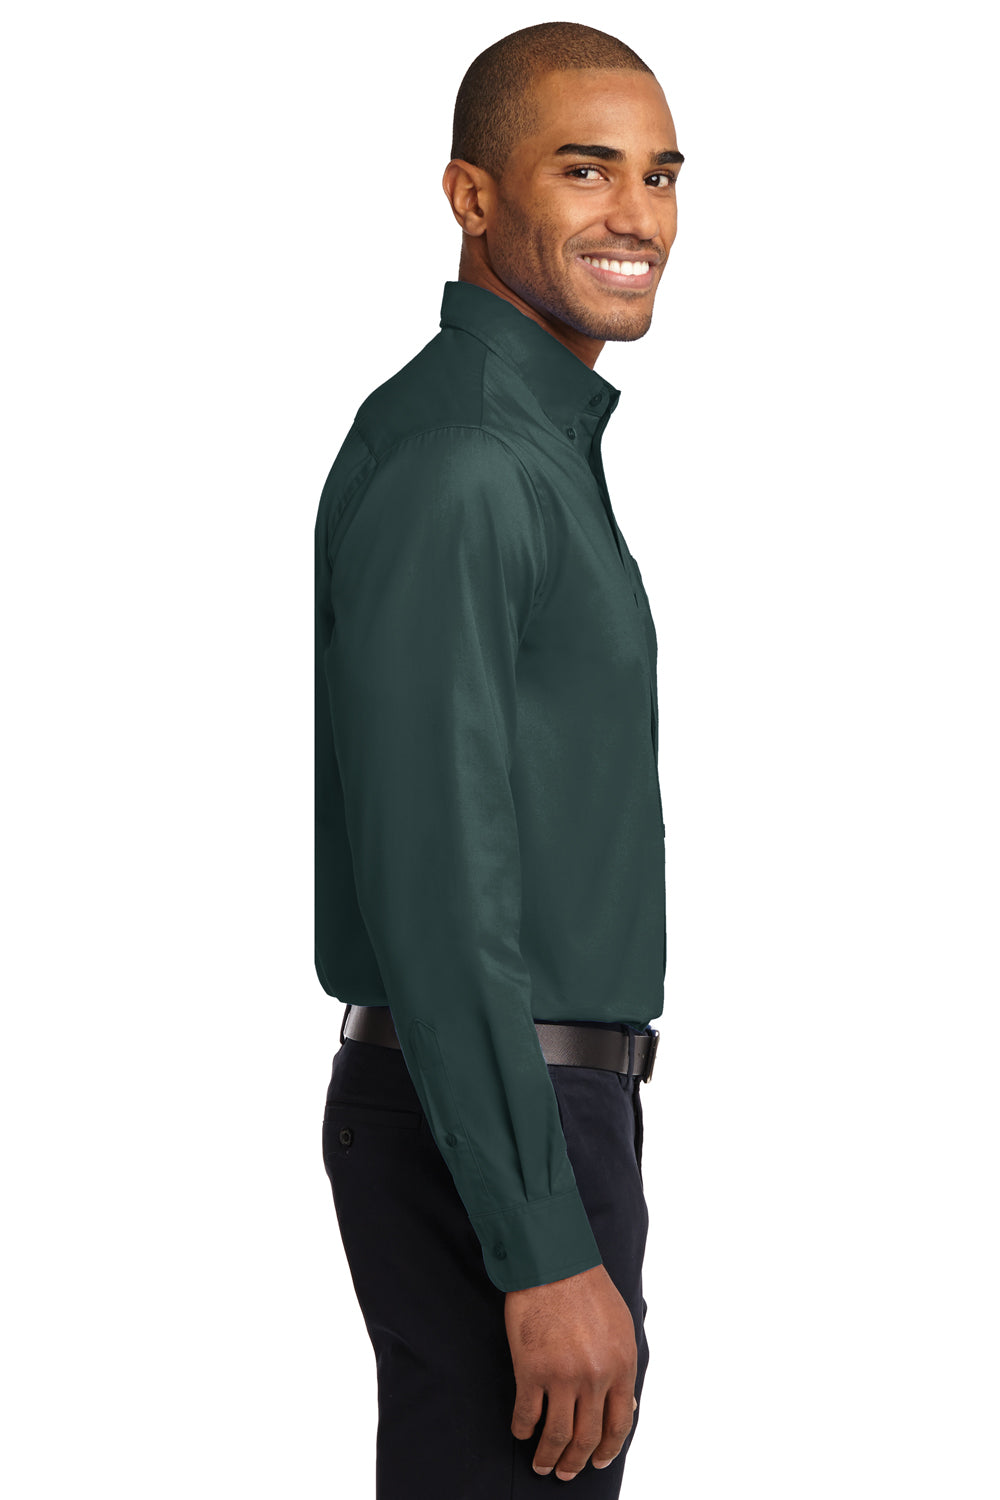 green dress shirt mens